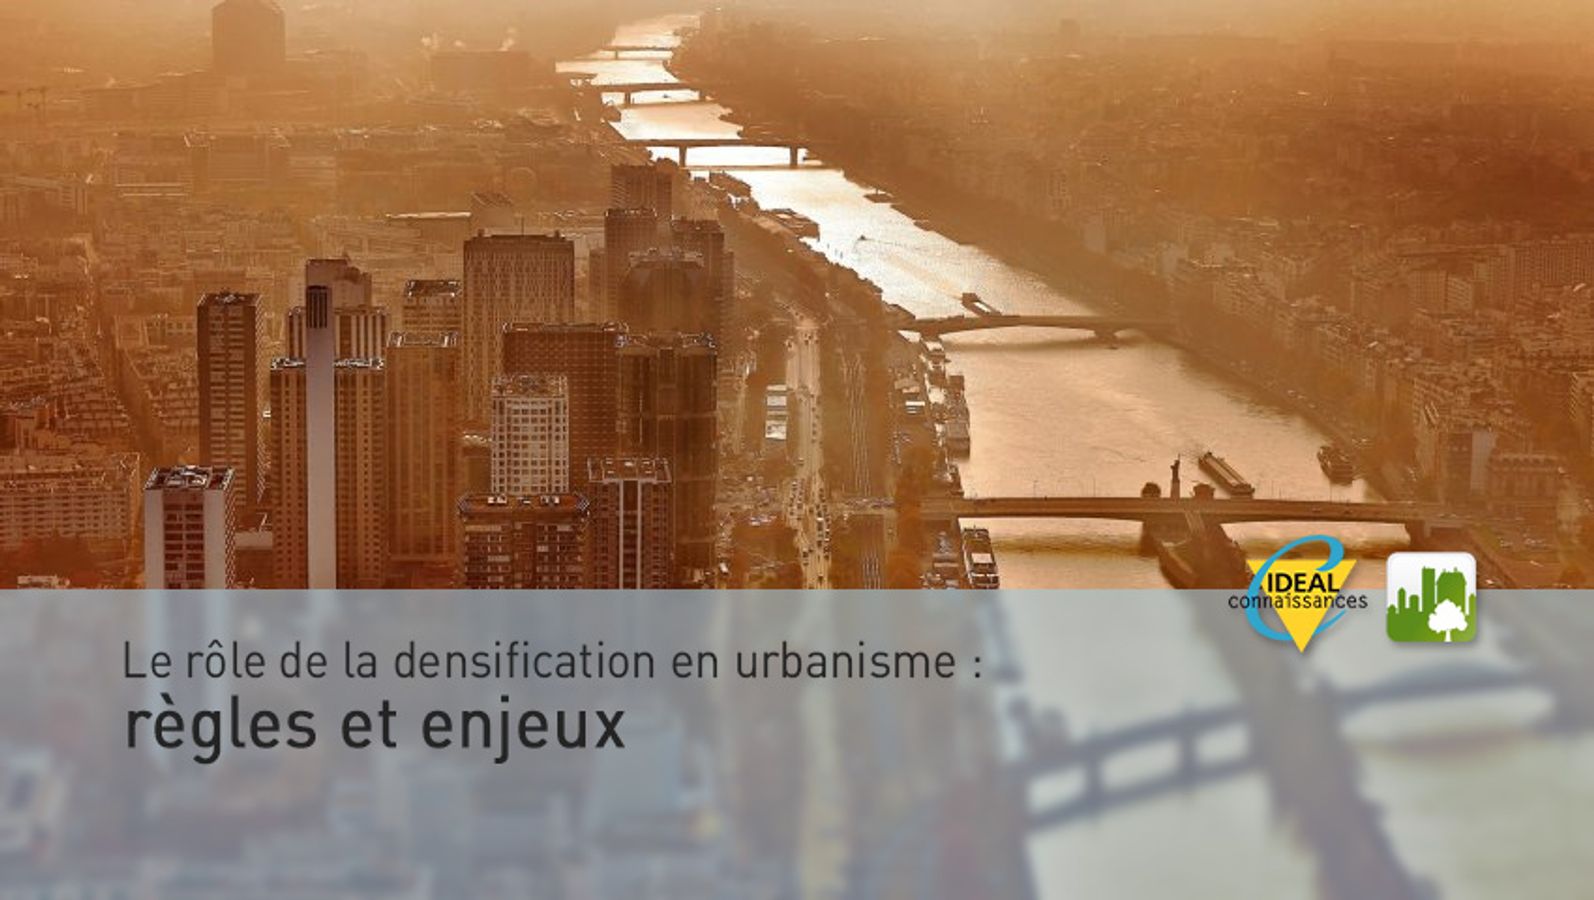 Le rôle de la densification en urbanisme : règles et enjeux